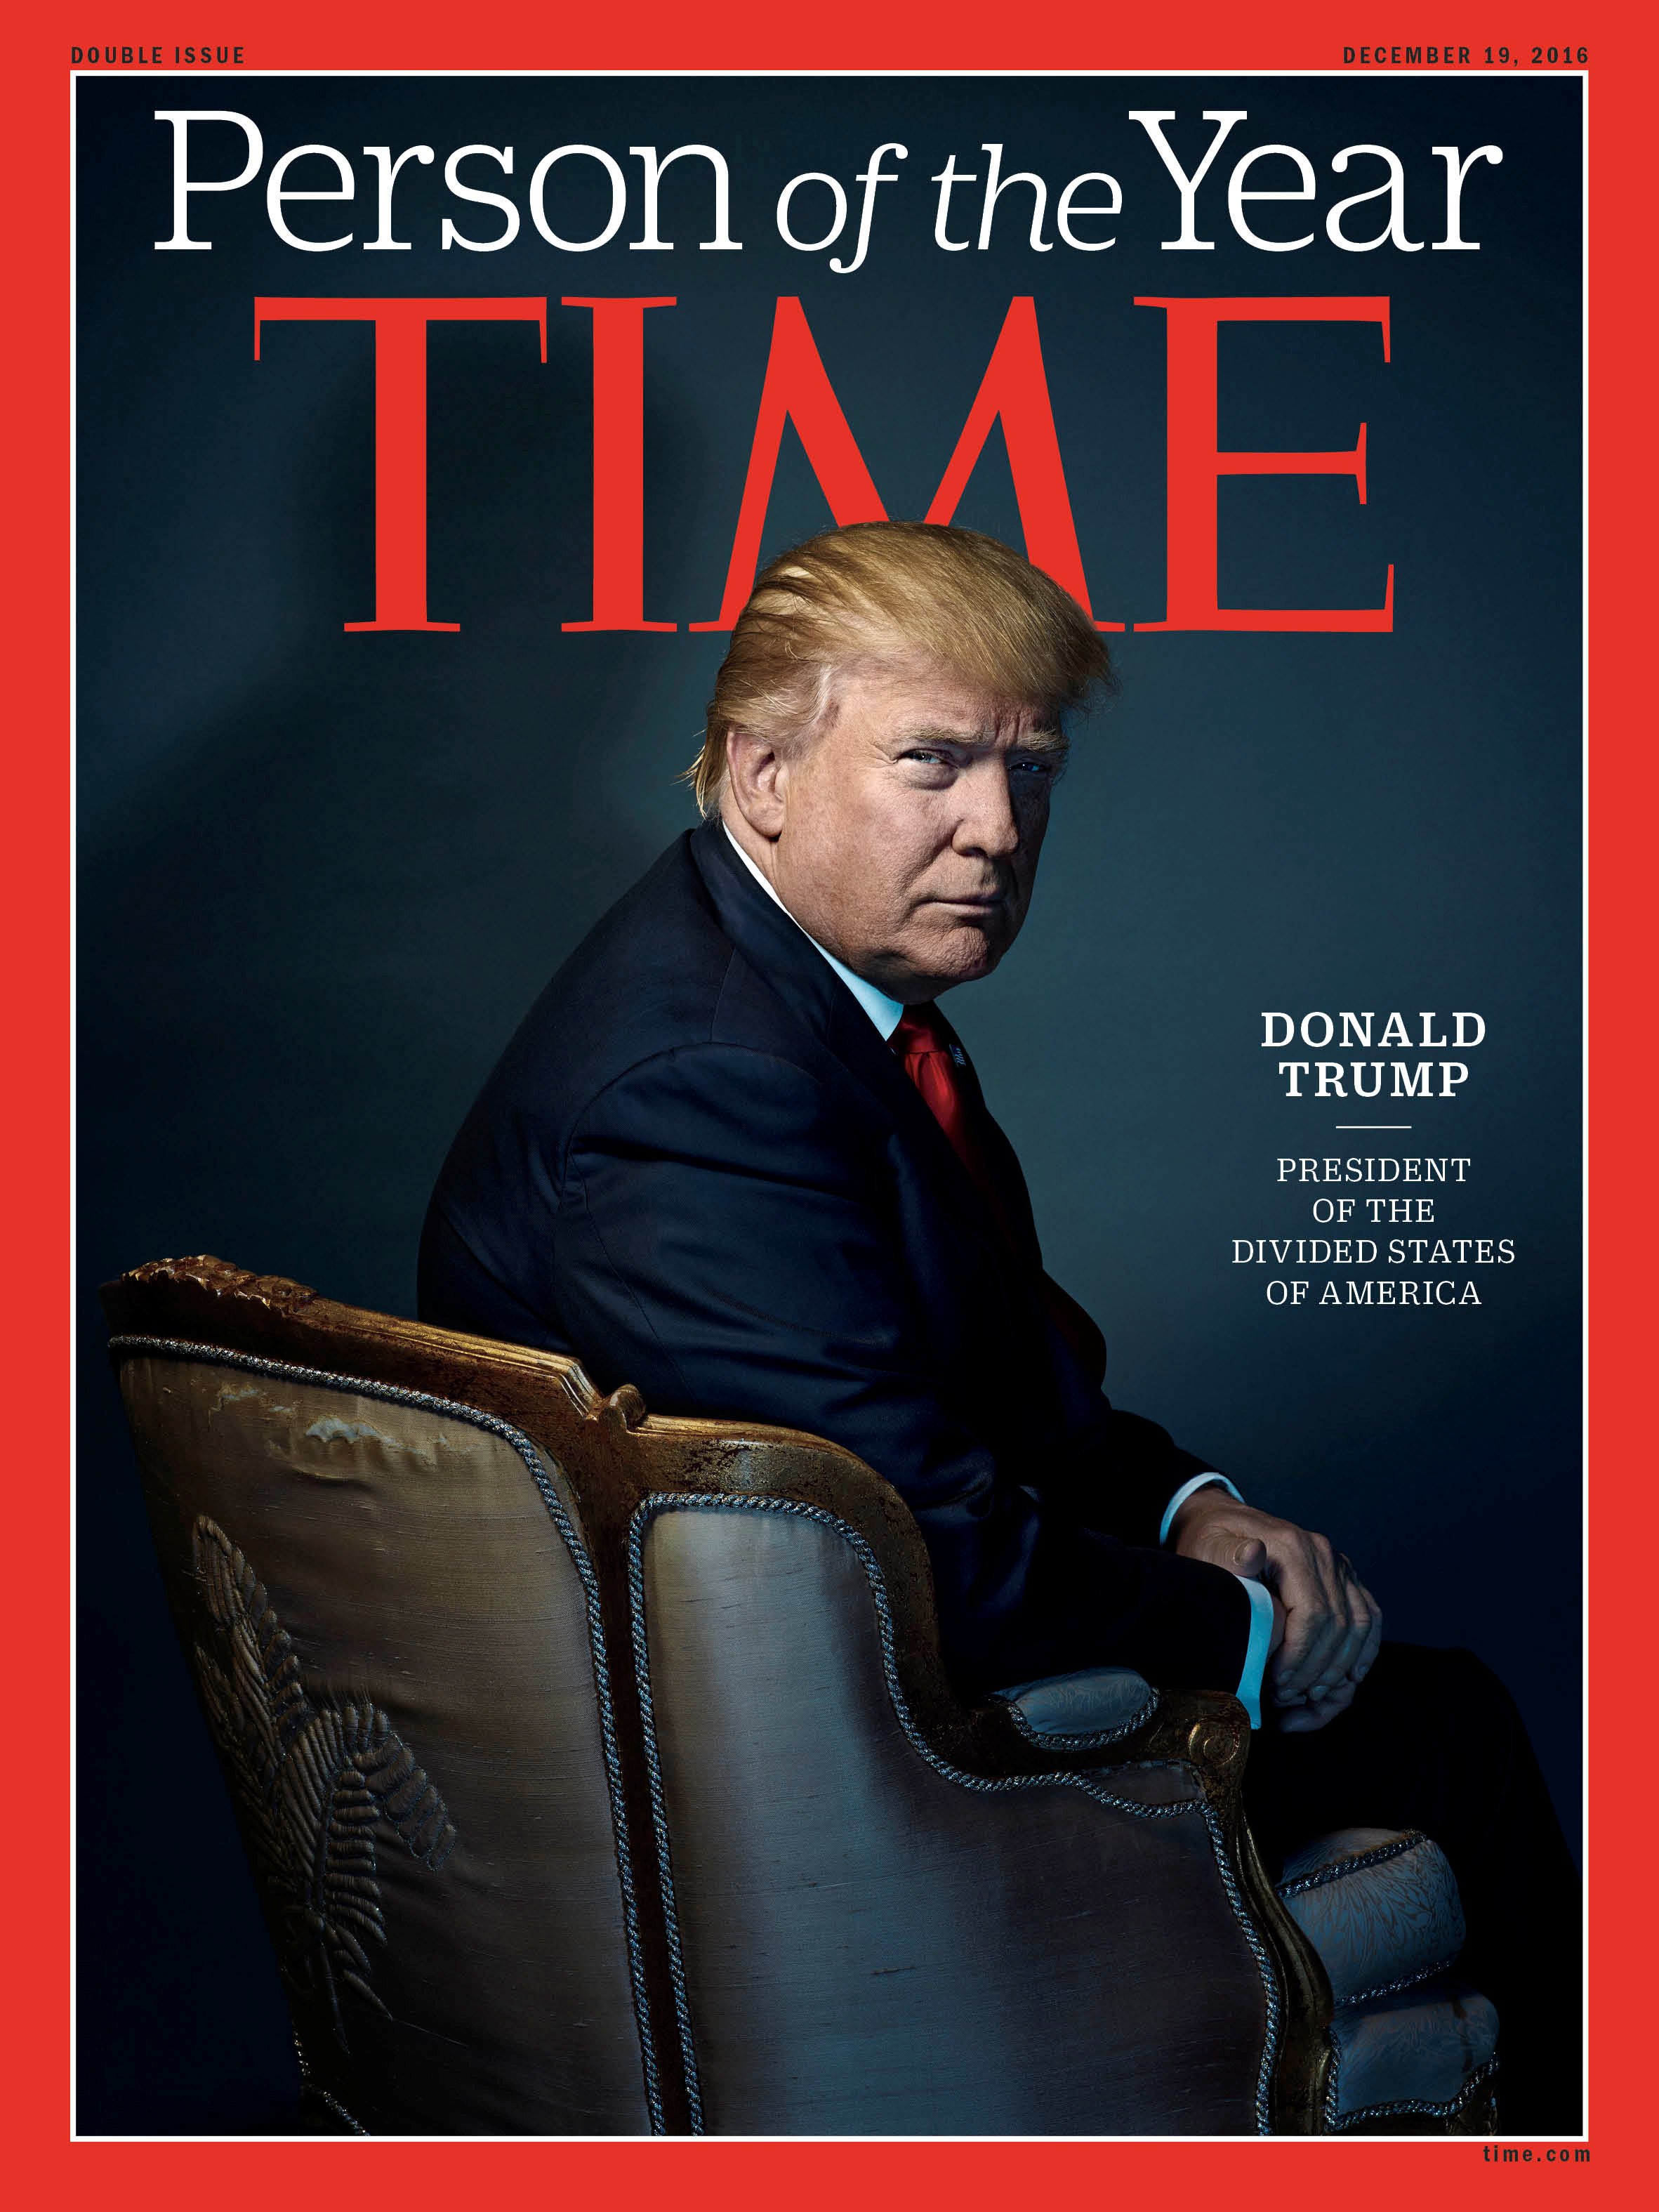 غلاف التايم الأمريكيى لشخصية عام 2016- بعنوان "ترامب رئيس الولايات المنقسمة"